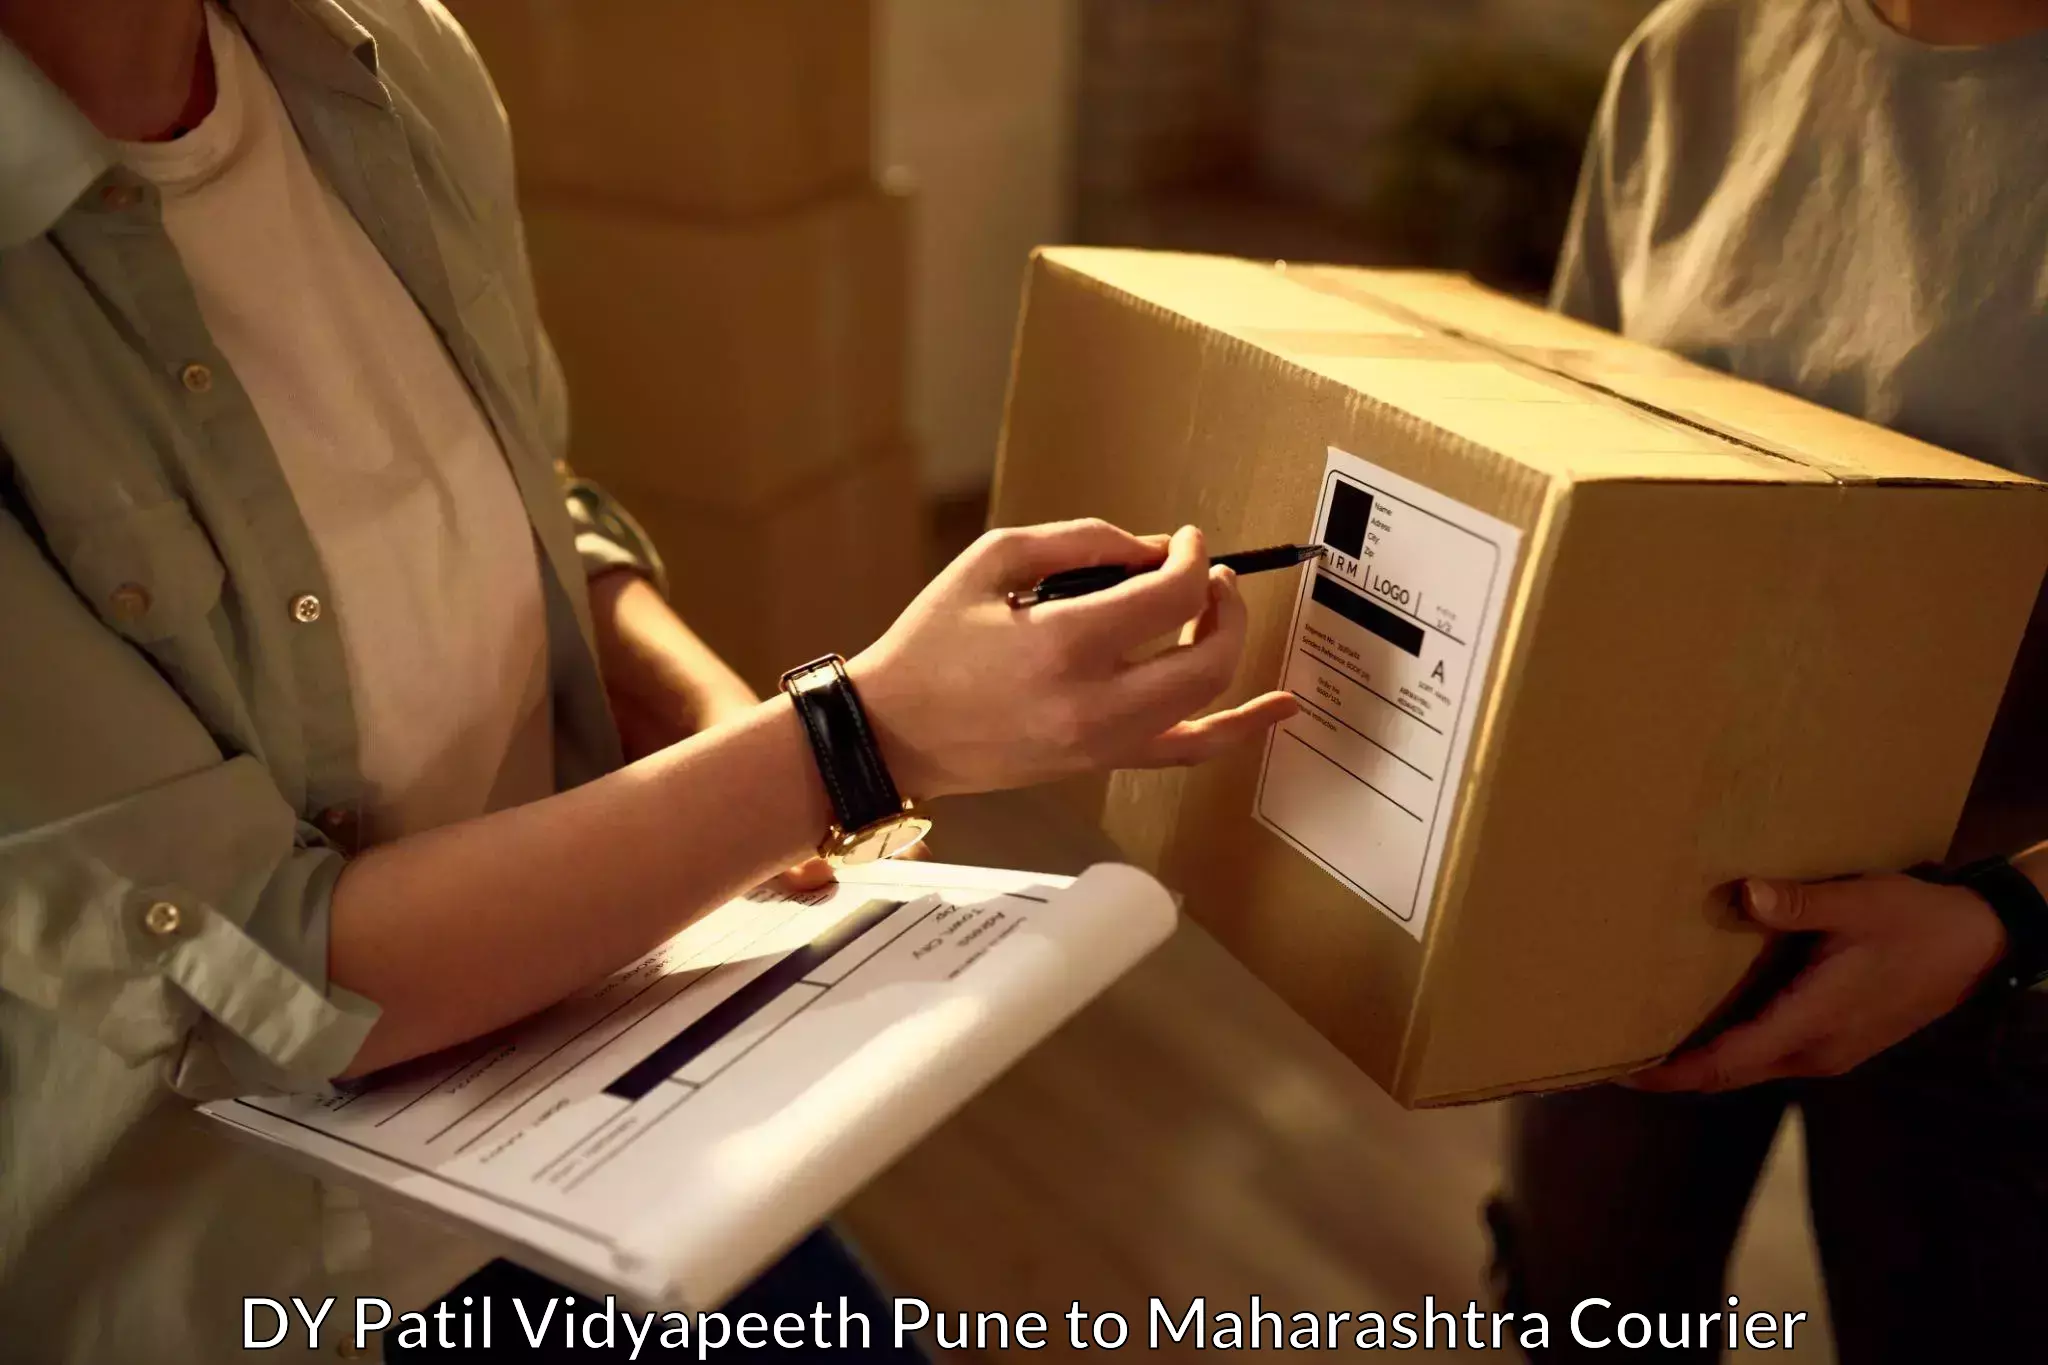 Bulk courier orders in DY Patil Vidyapeeth Pune to Dadar